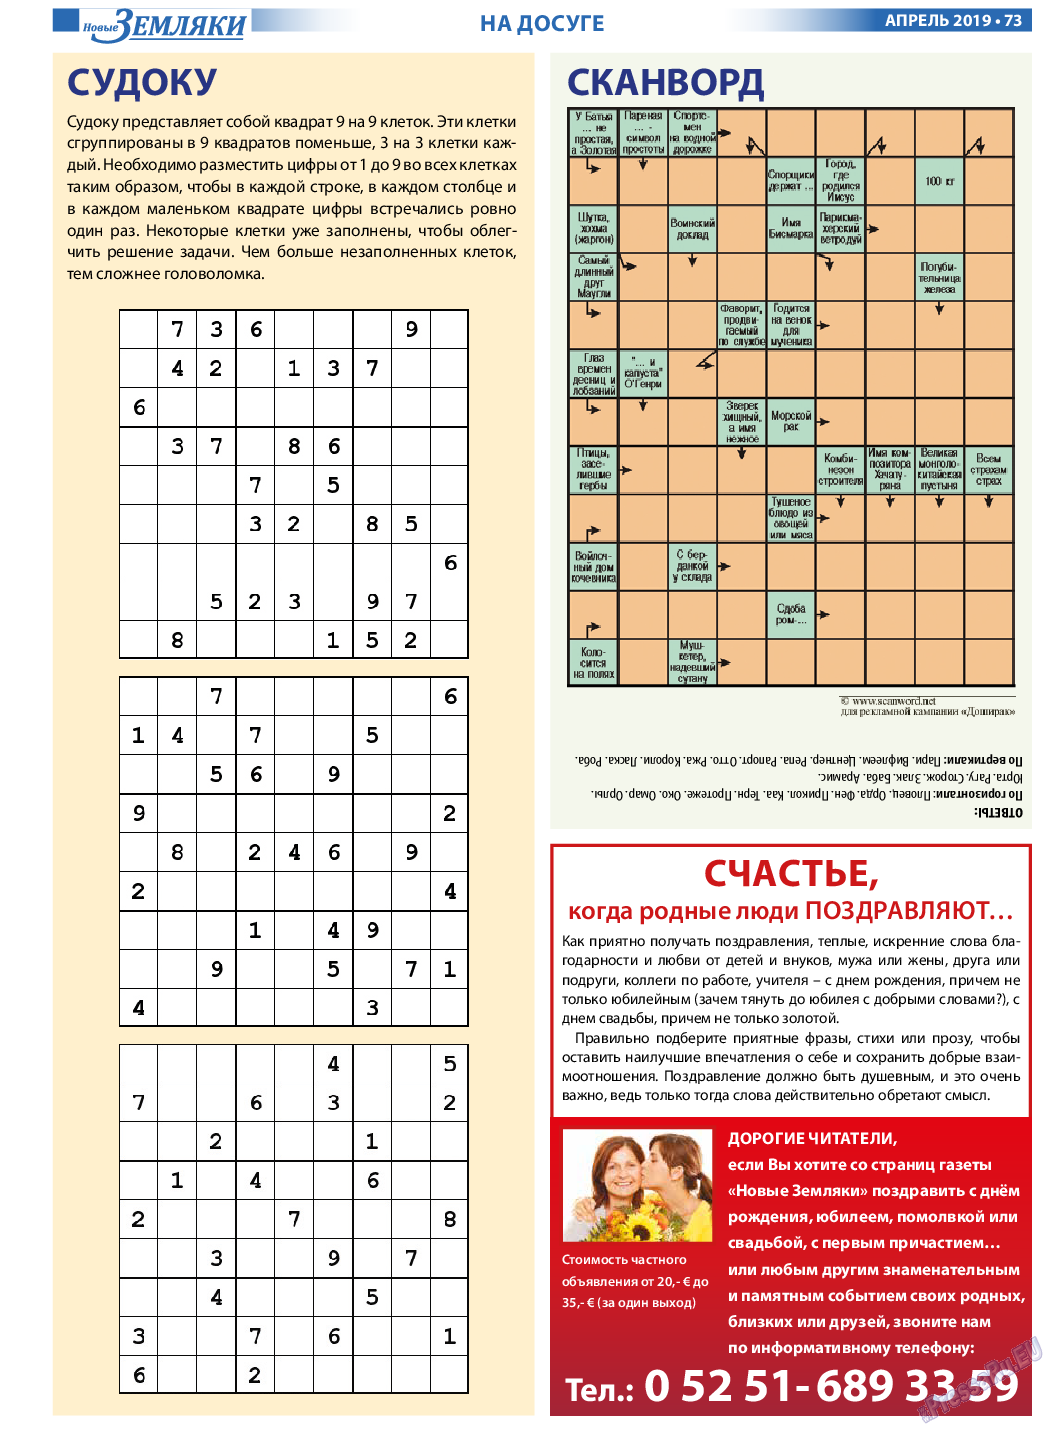 Новые Земляки, газета. 2019 №4 стр.73